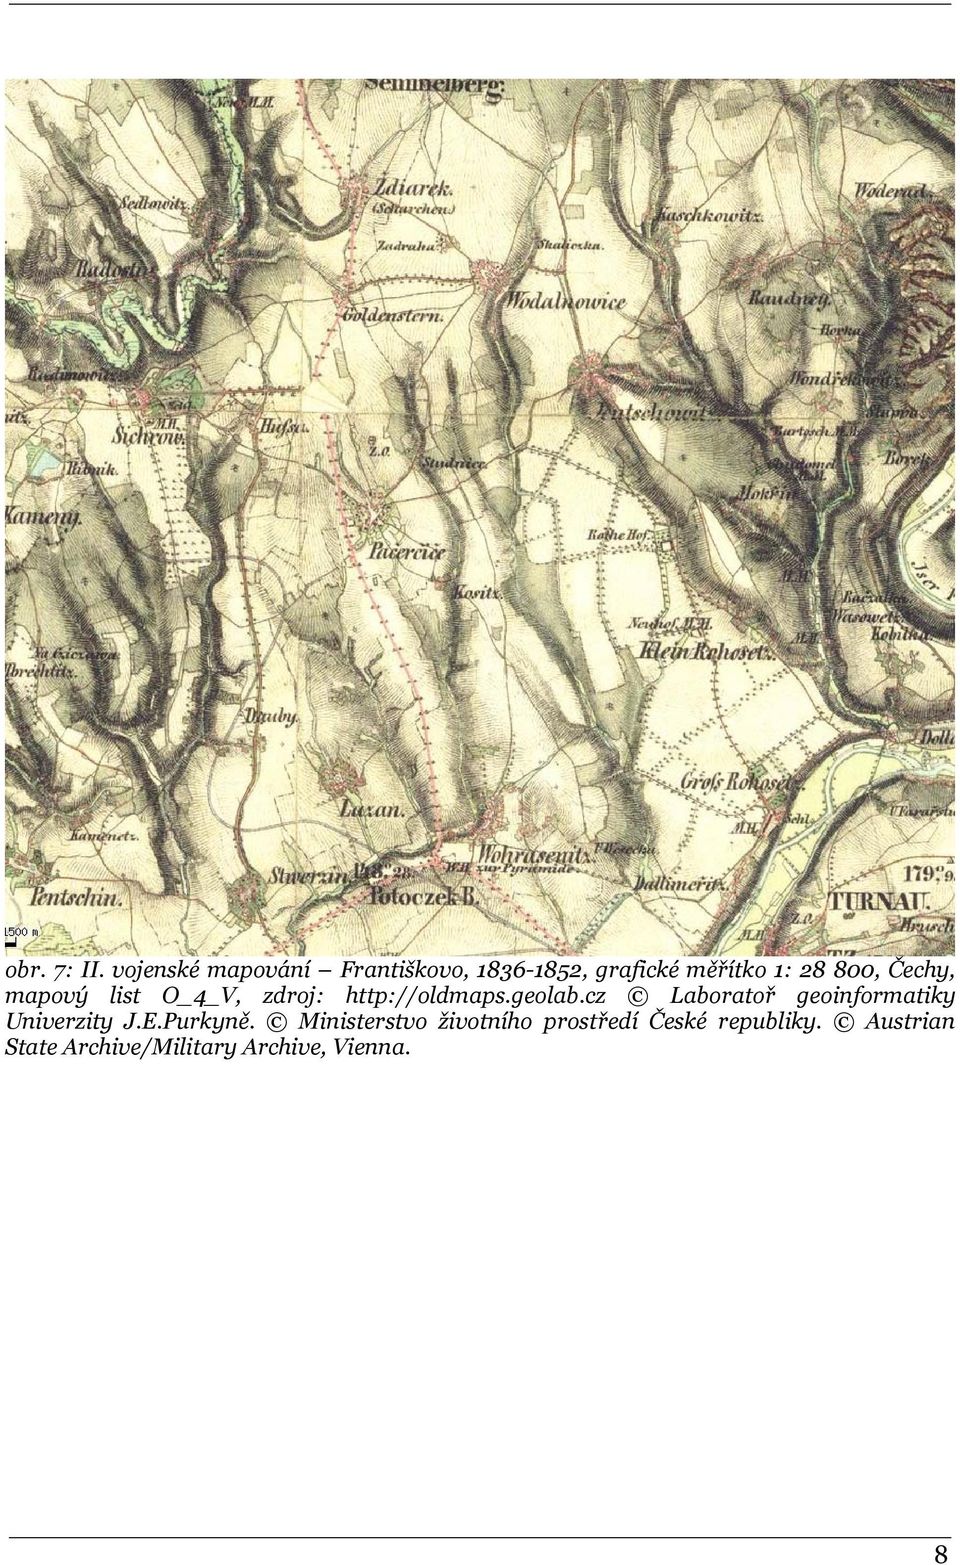 Čechy, mapový list O_4_V, zdroj: http://oldmaps.geolab.